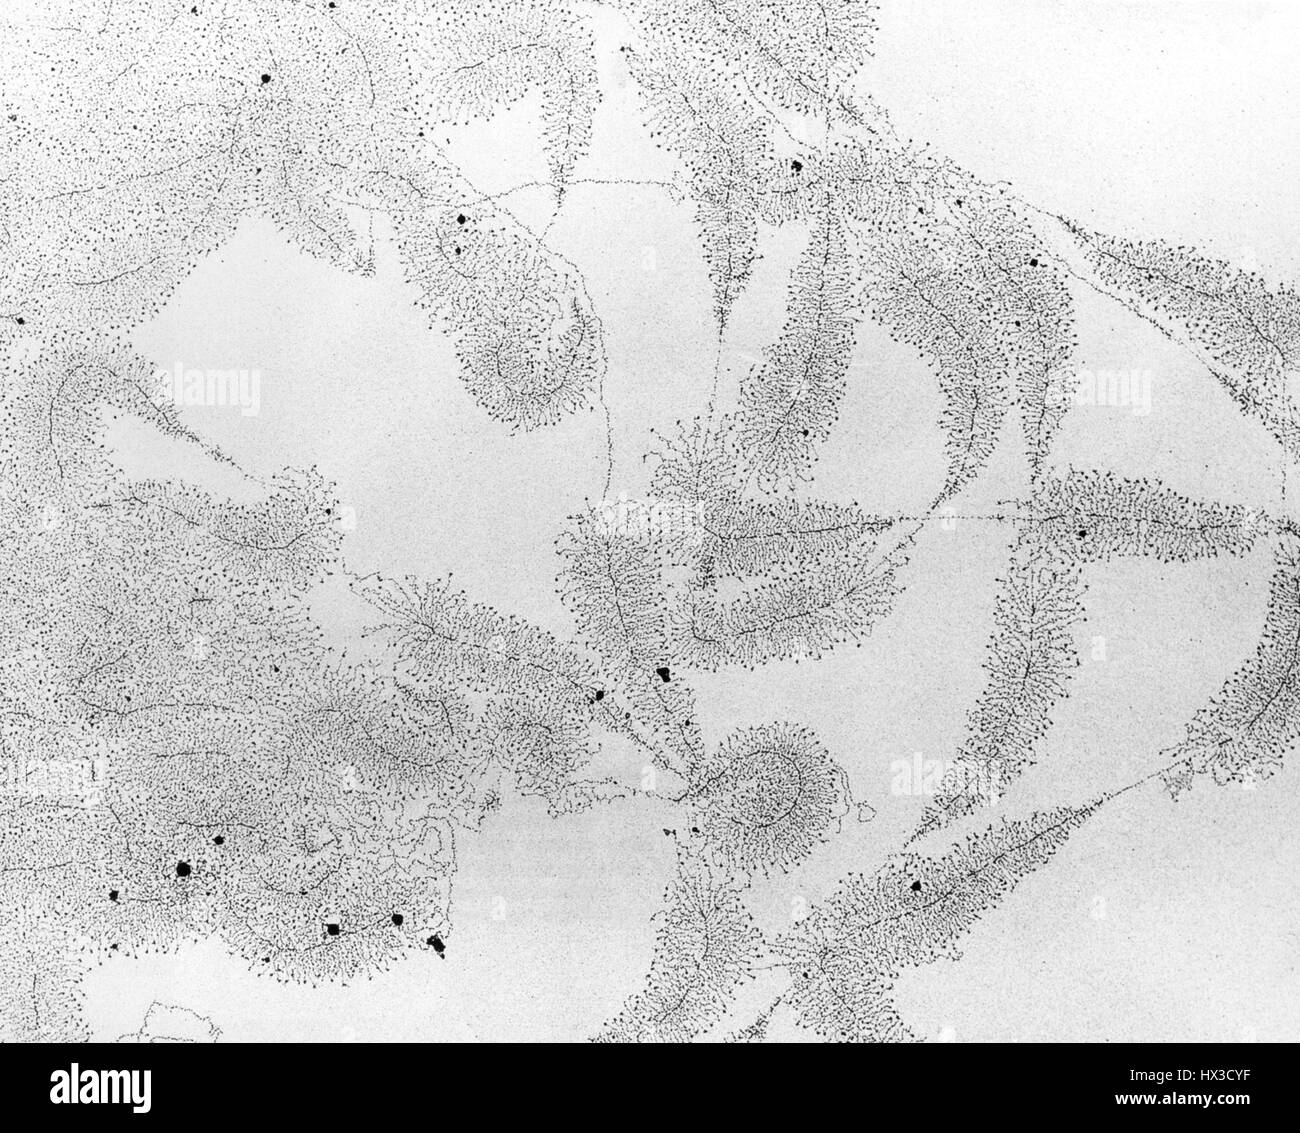 Microscope électronique historique photo de gènes fonctionnement montré environ 25, 000 fois la taille réelle, 1969. Image courtoisie du département américain de l'énergie. Banque D'Images